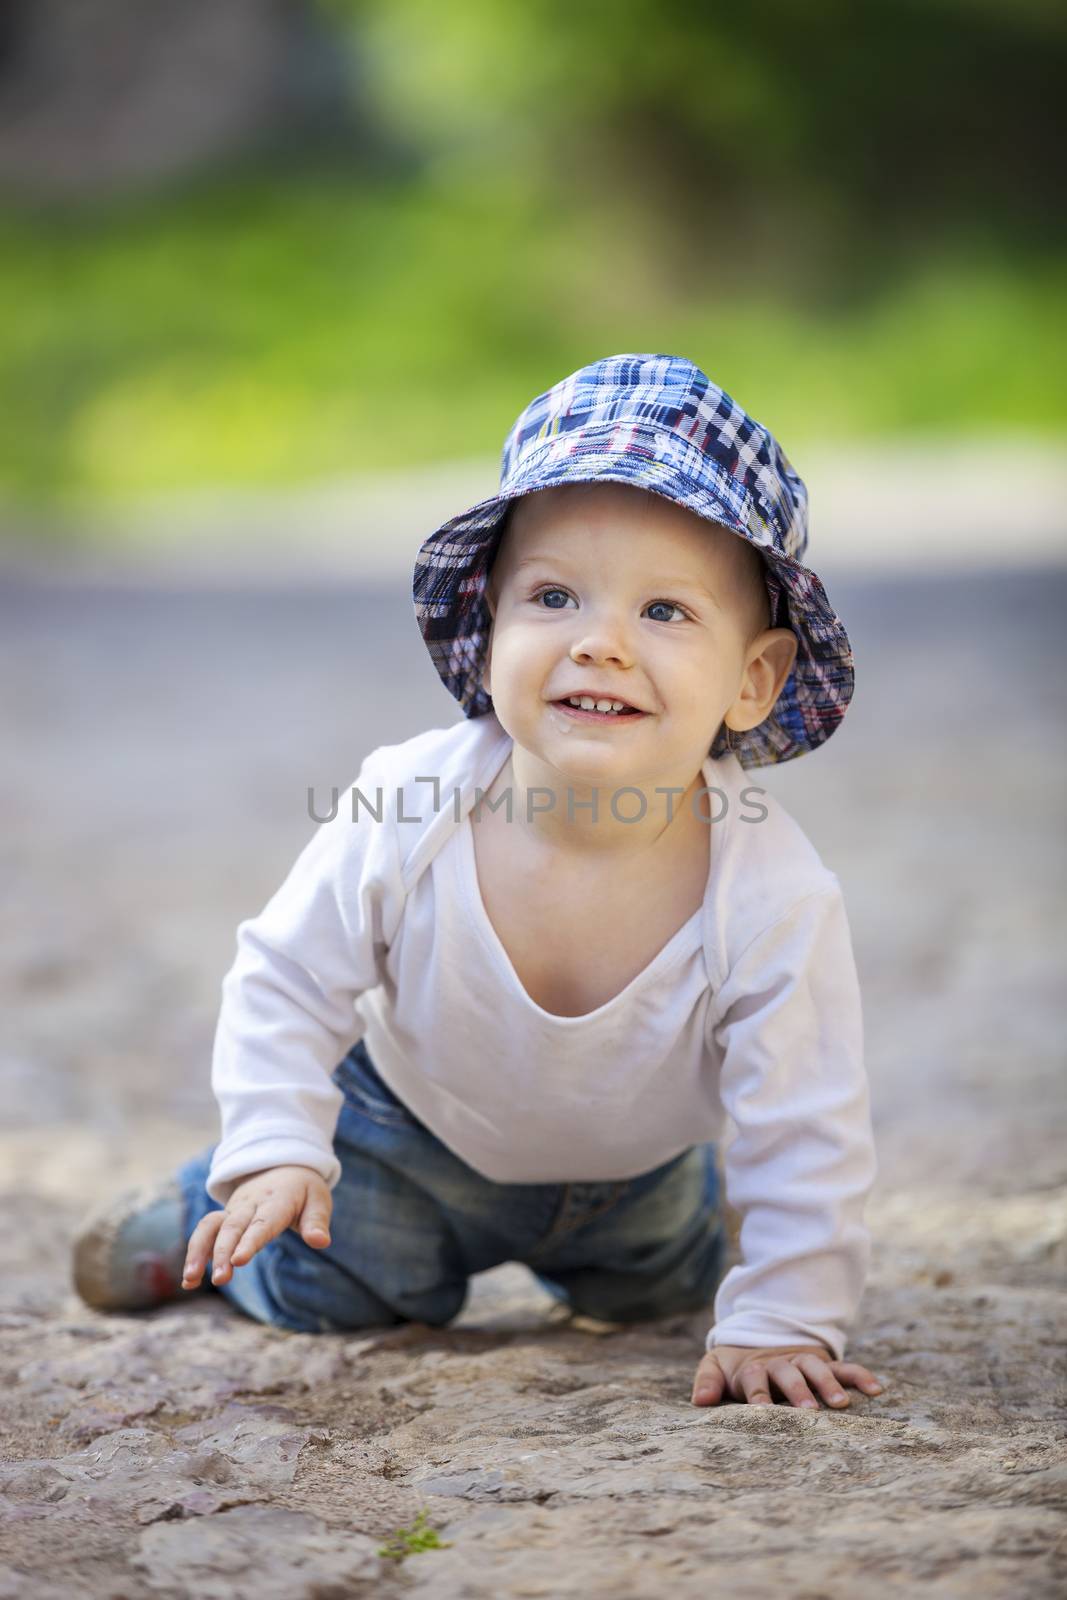 Cute little boy crawling on stone paved sidewalk by photobac